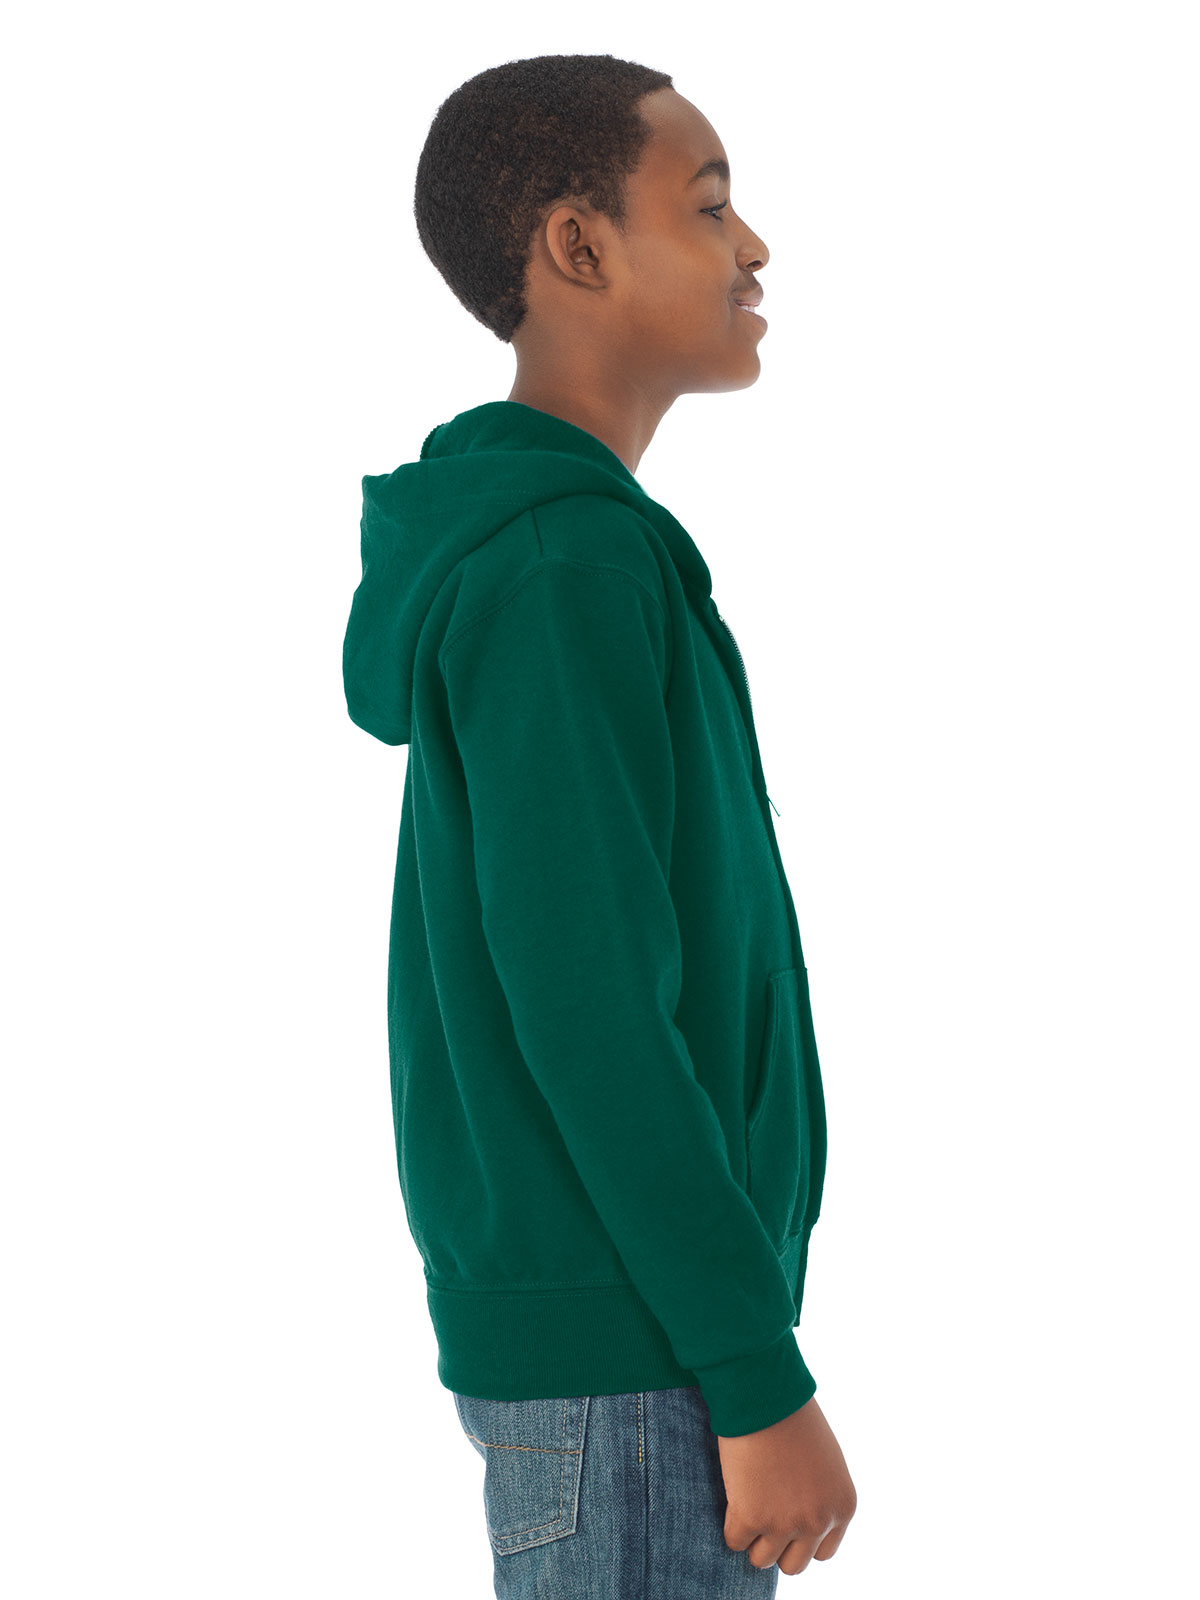 JERZEES® 993BR NuBlend® Youth Full-Zip Hooded Sweatshirt